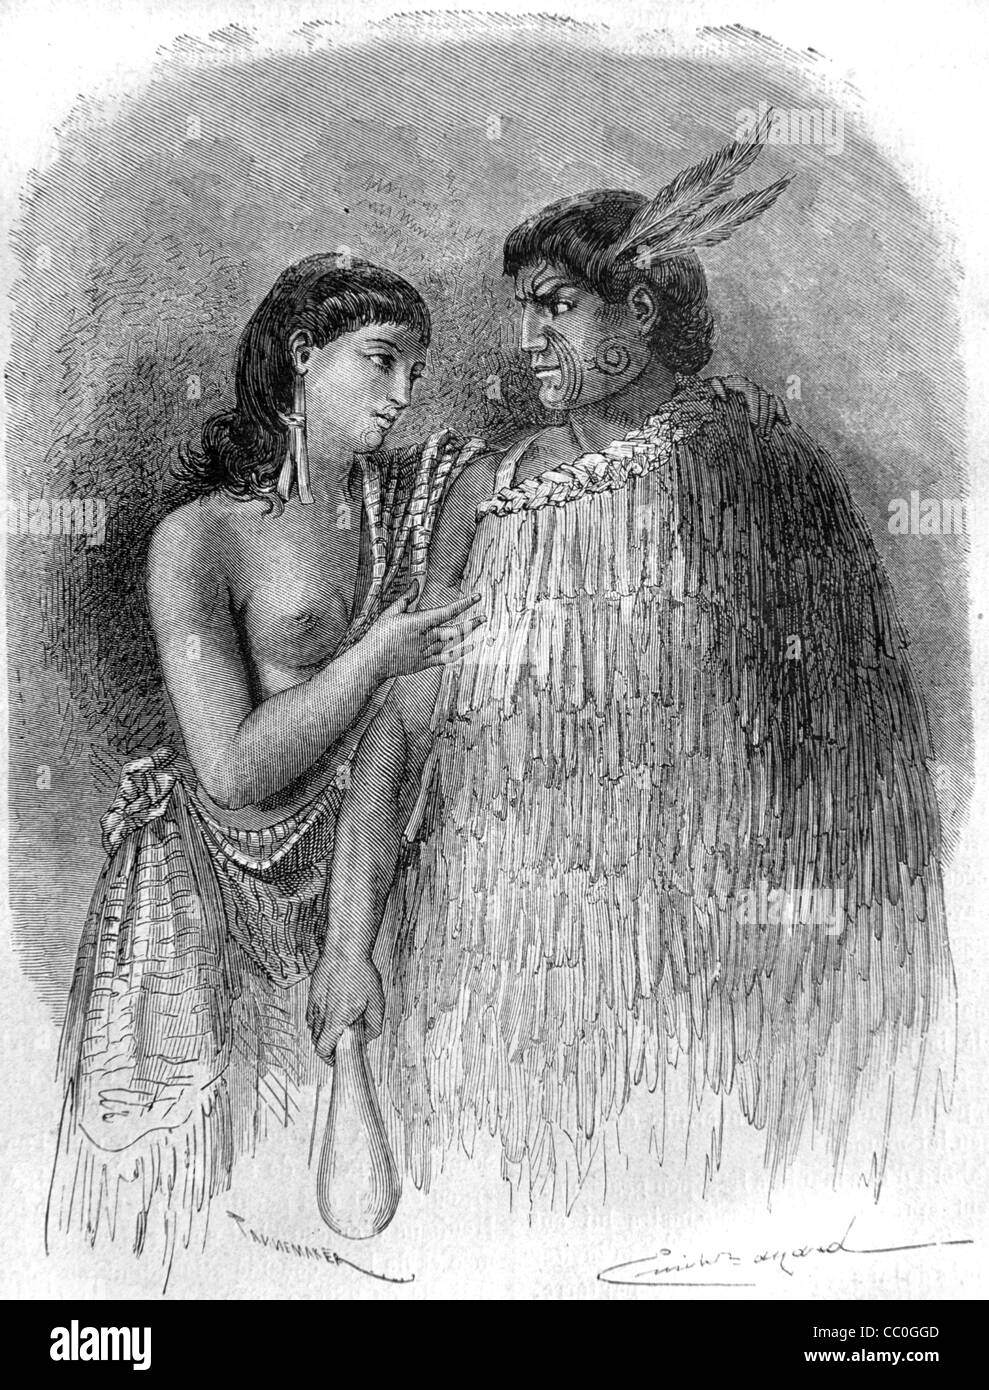 Hone Heke, o Hone Wiremu Heke pakai (1807?-1850), Maori Chief & leader, e moglie, Nuova Zelanda. Istigatore della guerra del Flagstaff. Illustrazione o incisione vintage Foto Stock